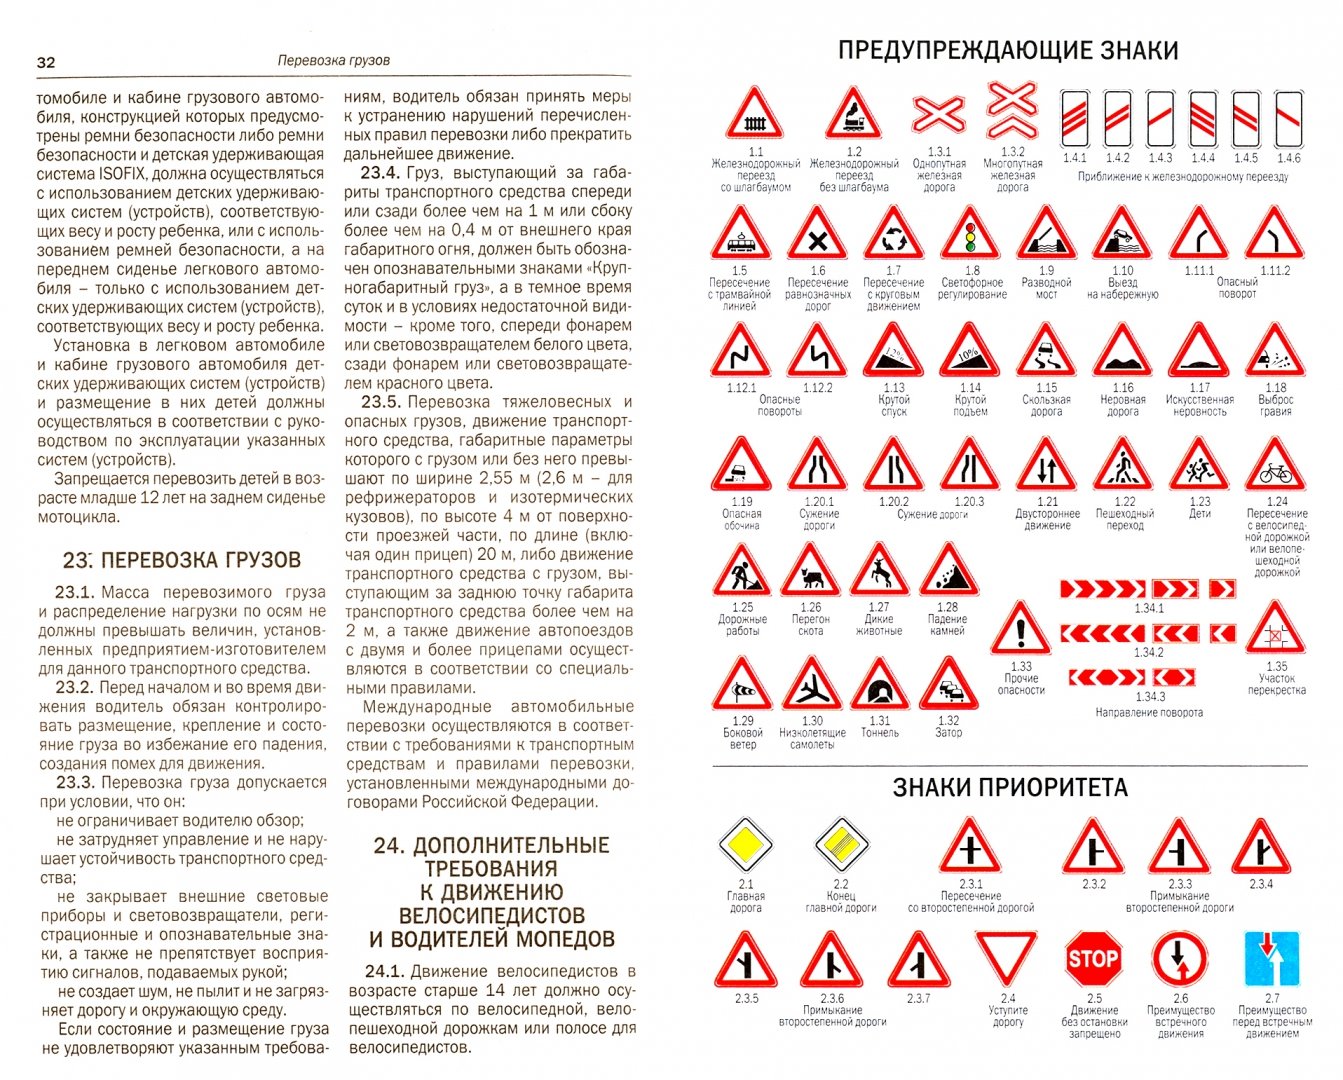 Иллюстрация 1 из 8 для Правила дорожного движения Российской Федерации + дополнительные дорожные знаки 2019 | Лабиринт - книги. Источник: Лабиринт